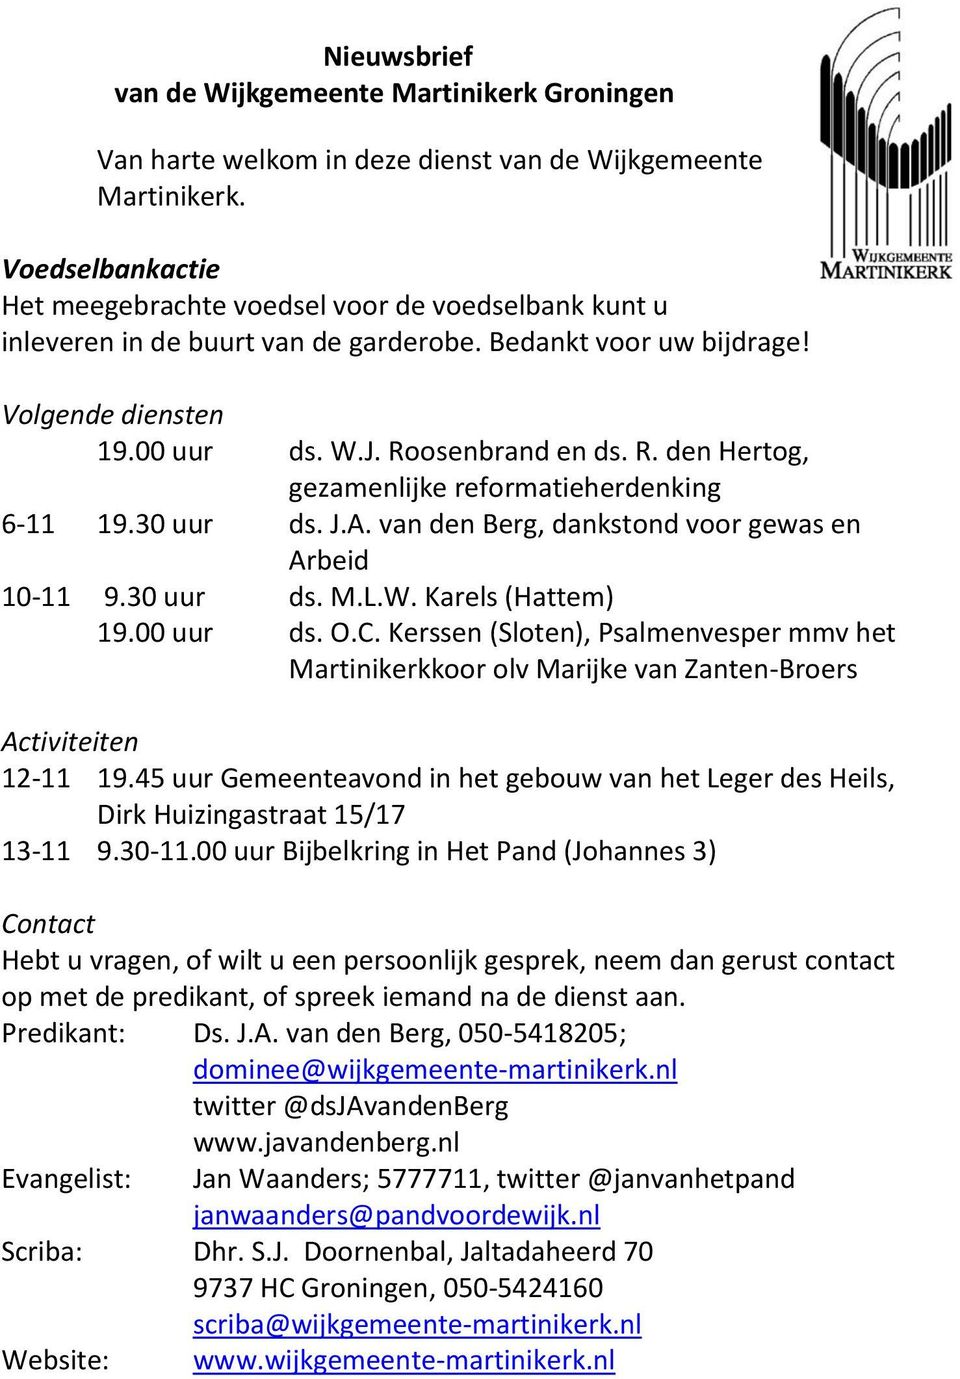 osenbrand en ds. R. den Hertog, gezamenlijke reformatieherdenking 6-11 19.30 uur ds. J.A. van den Berg, dankstond voor gewas en Arbeid 10-11 9.30 uur ds. M.L.W. Karels (Hattem) 19.00 uur ds. O.C.